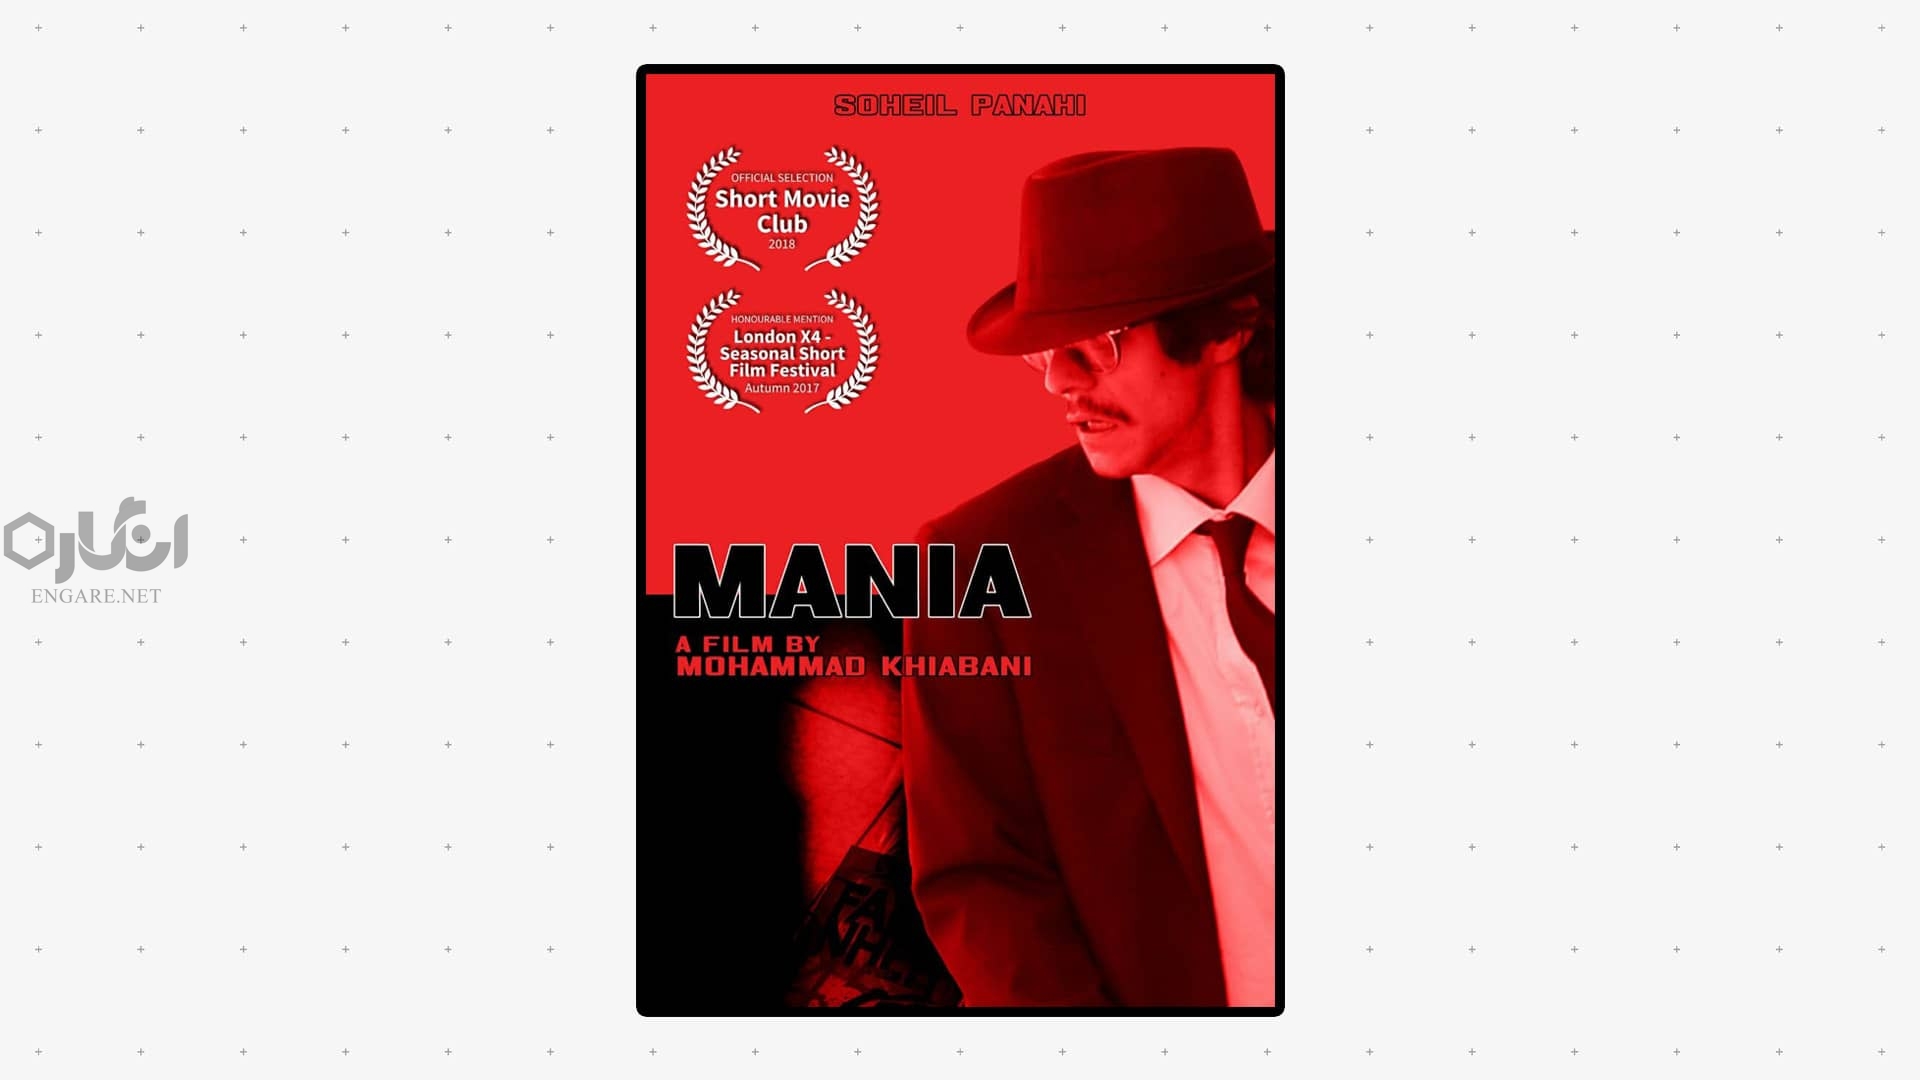 Mania - فیلم کوتاه «مانیا» - محمد خیابانی, مانیا, فیلم مانیا, فیلم کوتاه ایرانی مفهومی, فیلم کوتاه ایرانی, فیلم کوتاه, دیکتاتوری, دیکتاتور فیلم, دیکتاتور چیست, دیکتاتور, mania movie